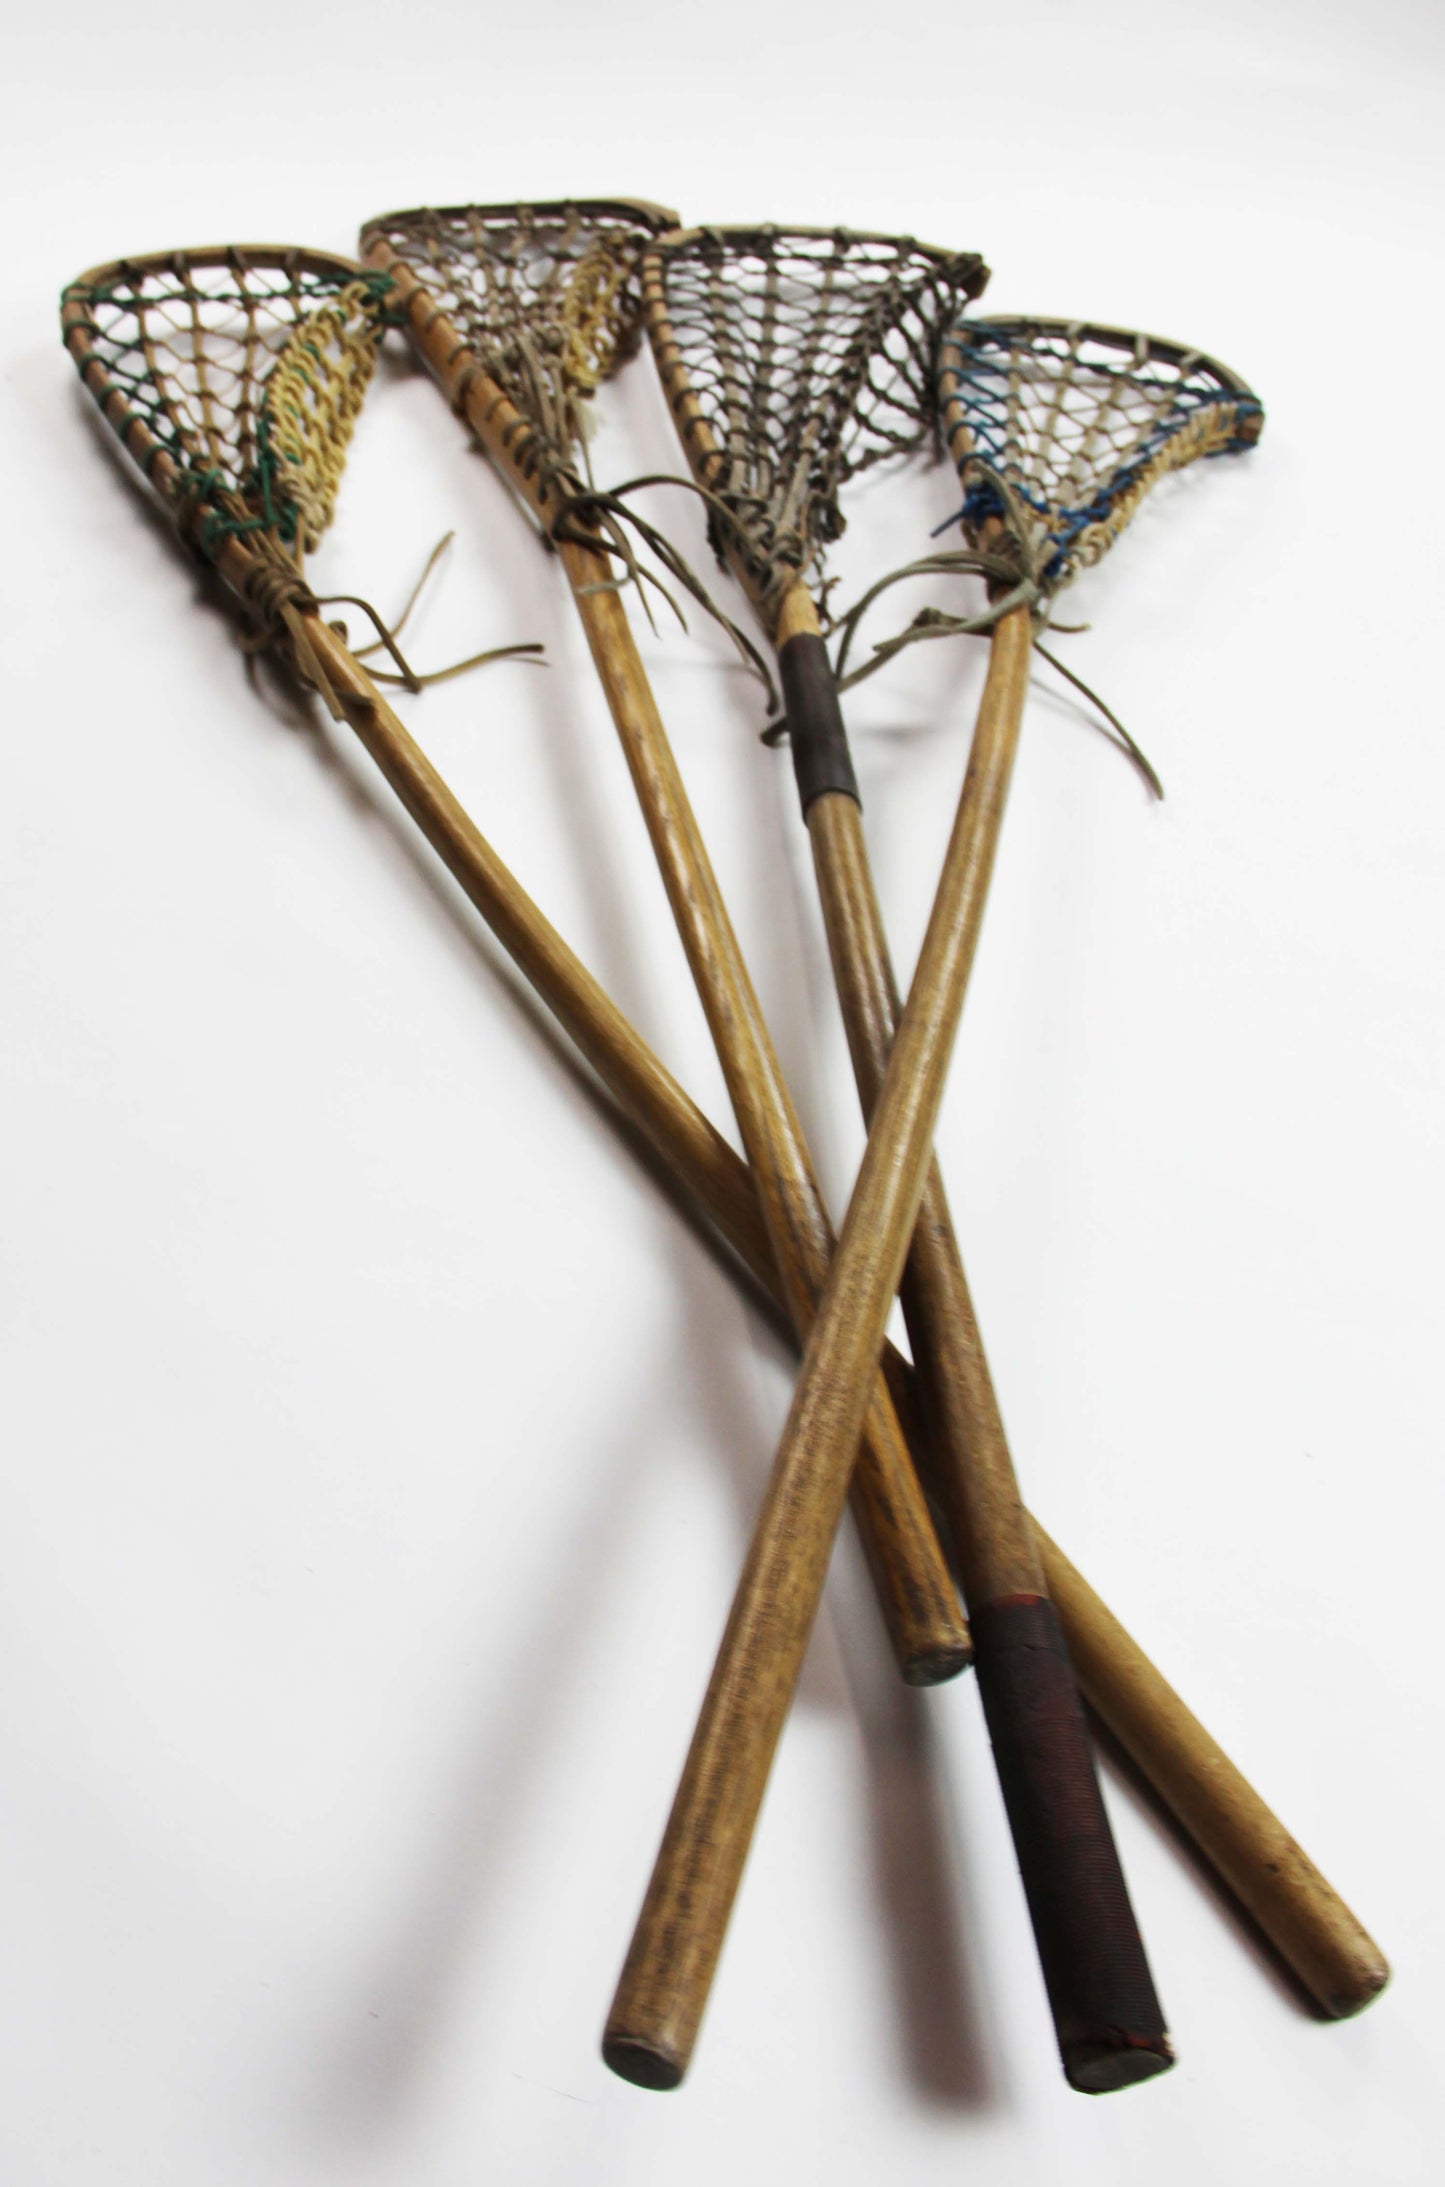 Vintage Lacrosse Sticks